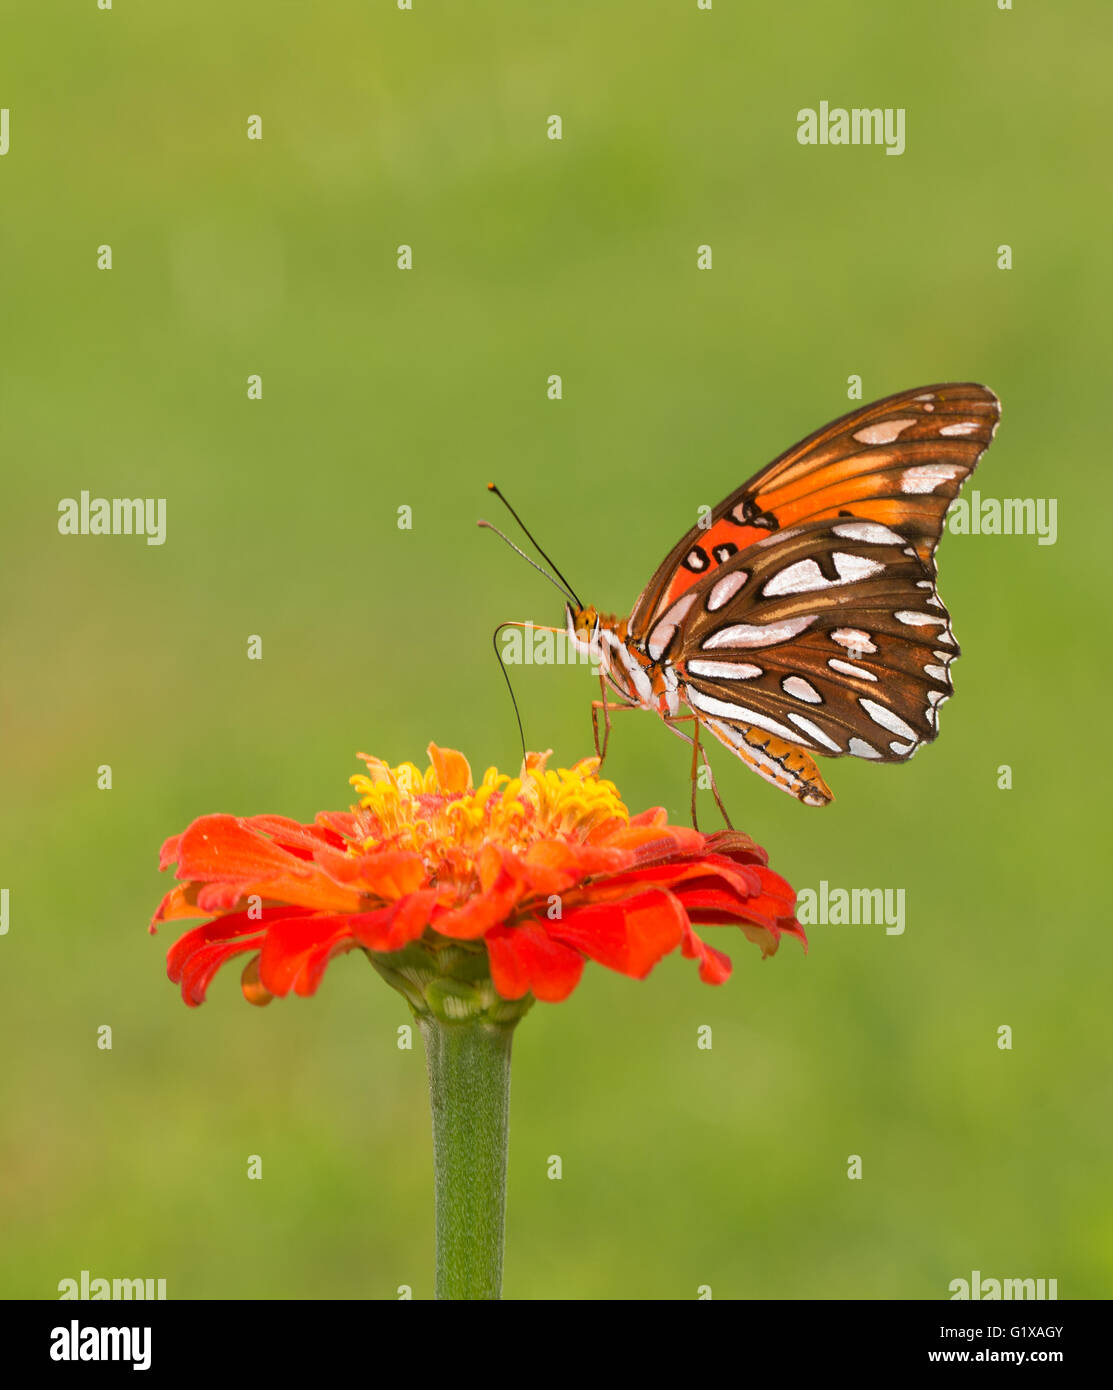 Magnifique Golfe Fritillary butterfly se nourrissant sur une fleur Zinnia orange contre green summer background Banque D'Images